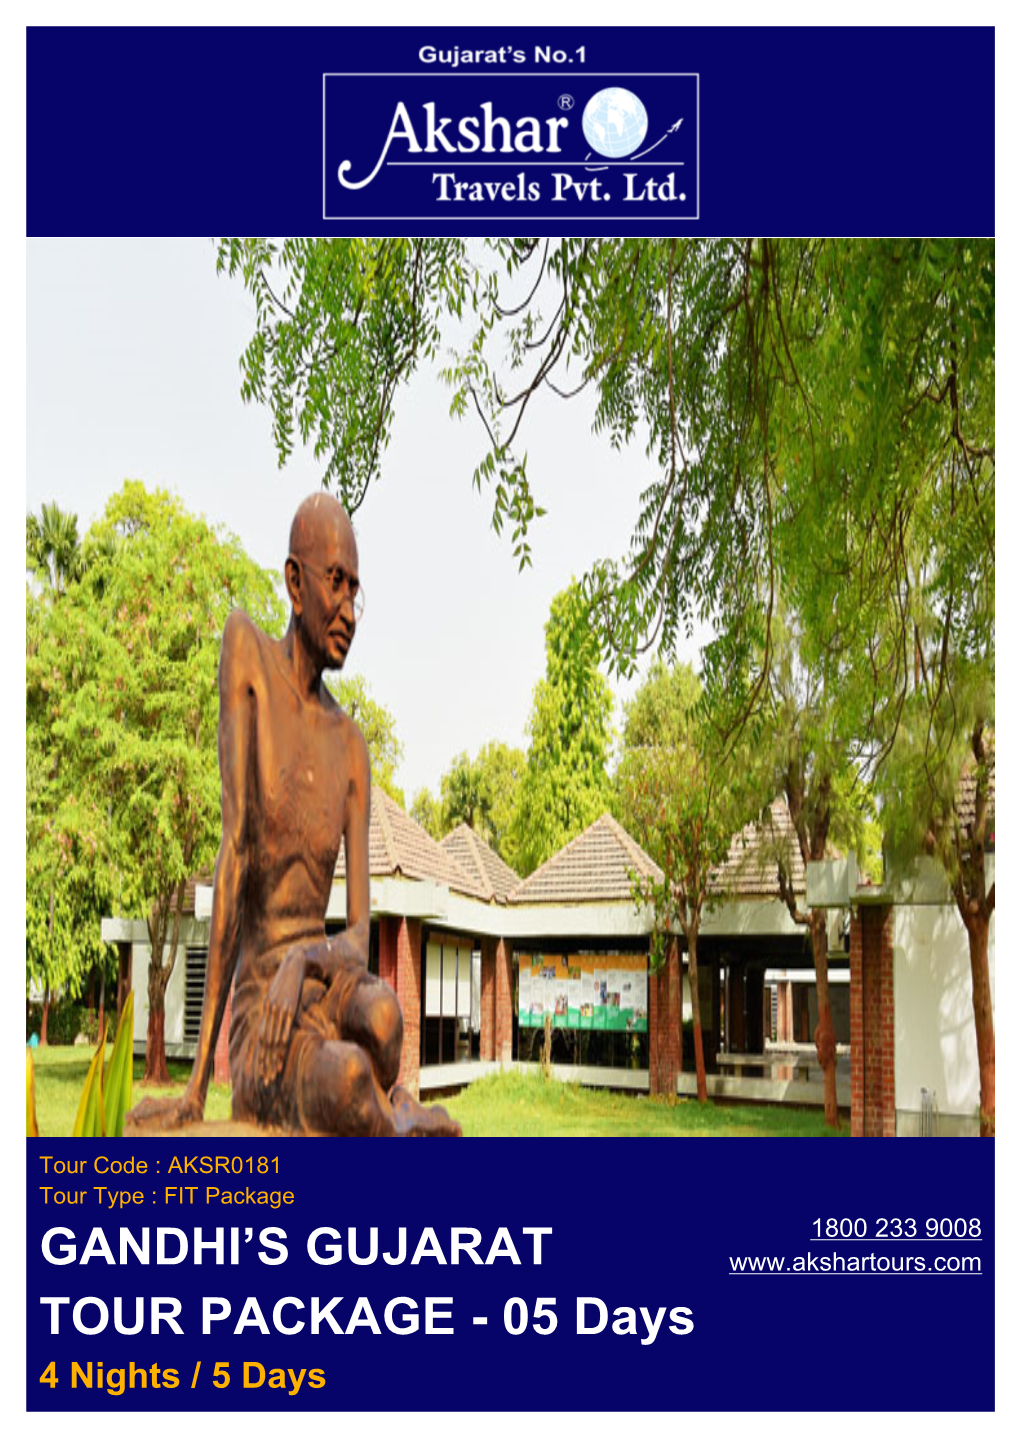 Gandhi's Gujarat Tour Package